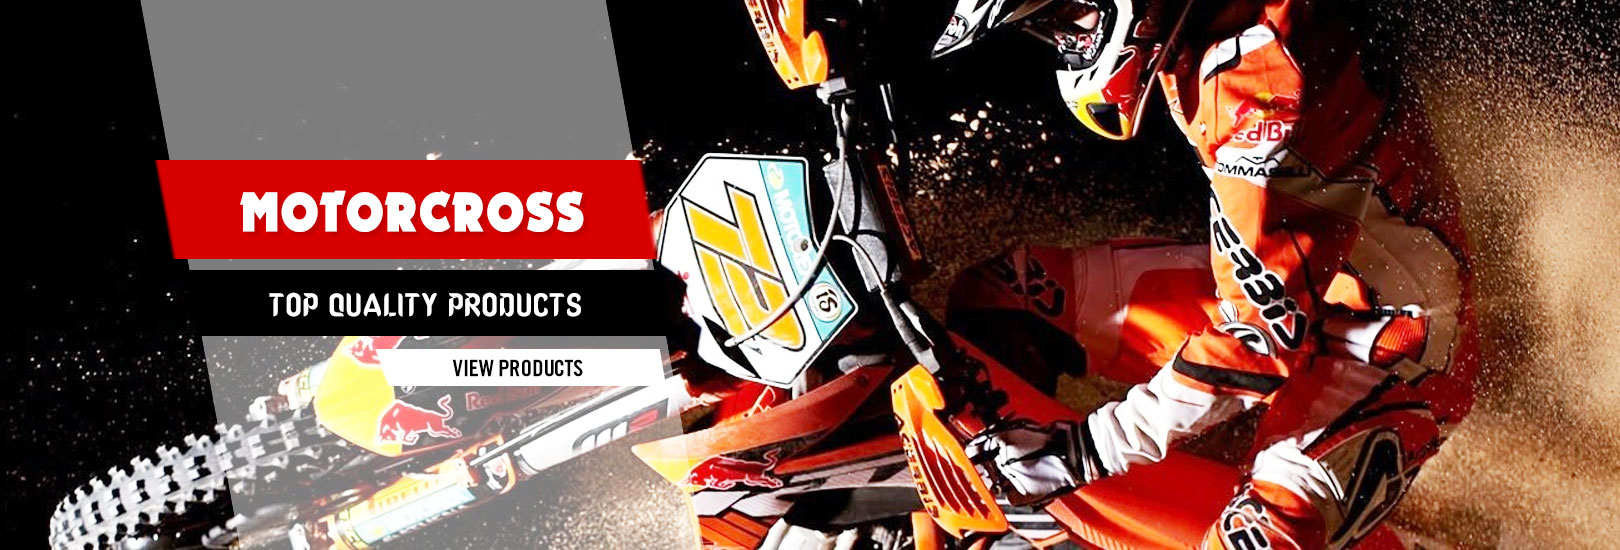 motocross-gloves-gears